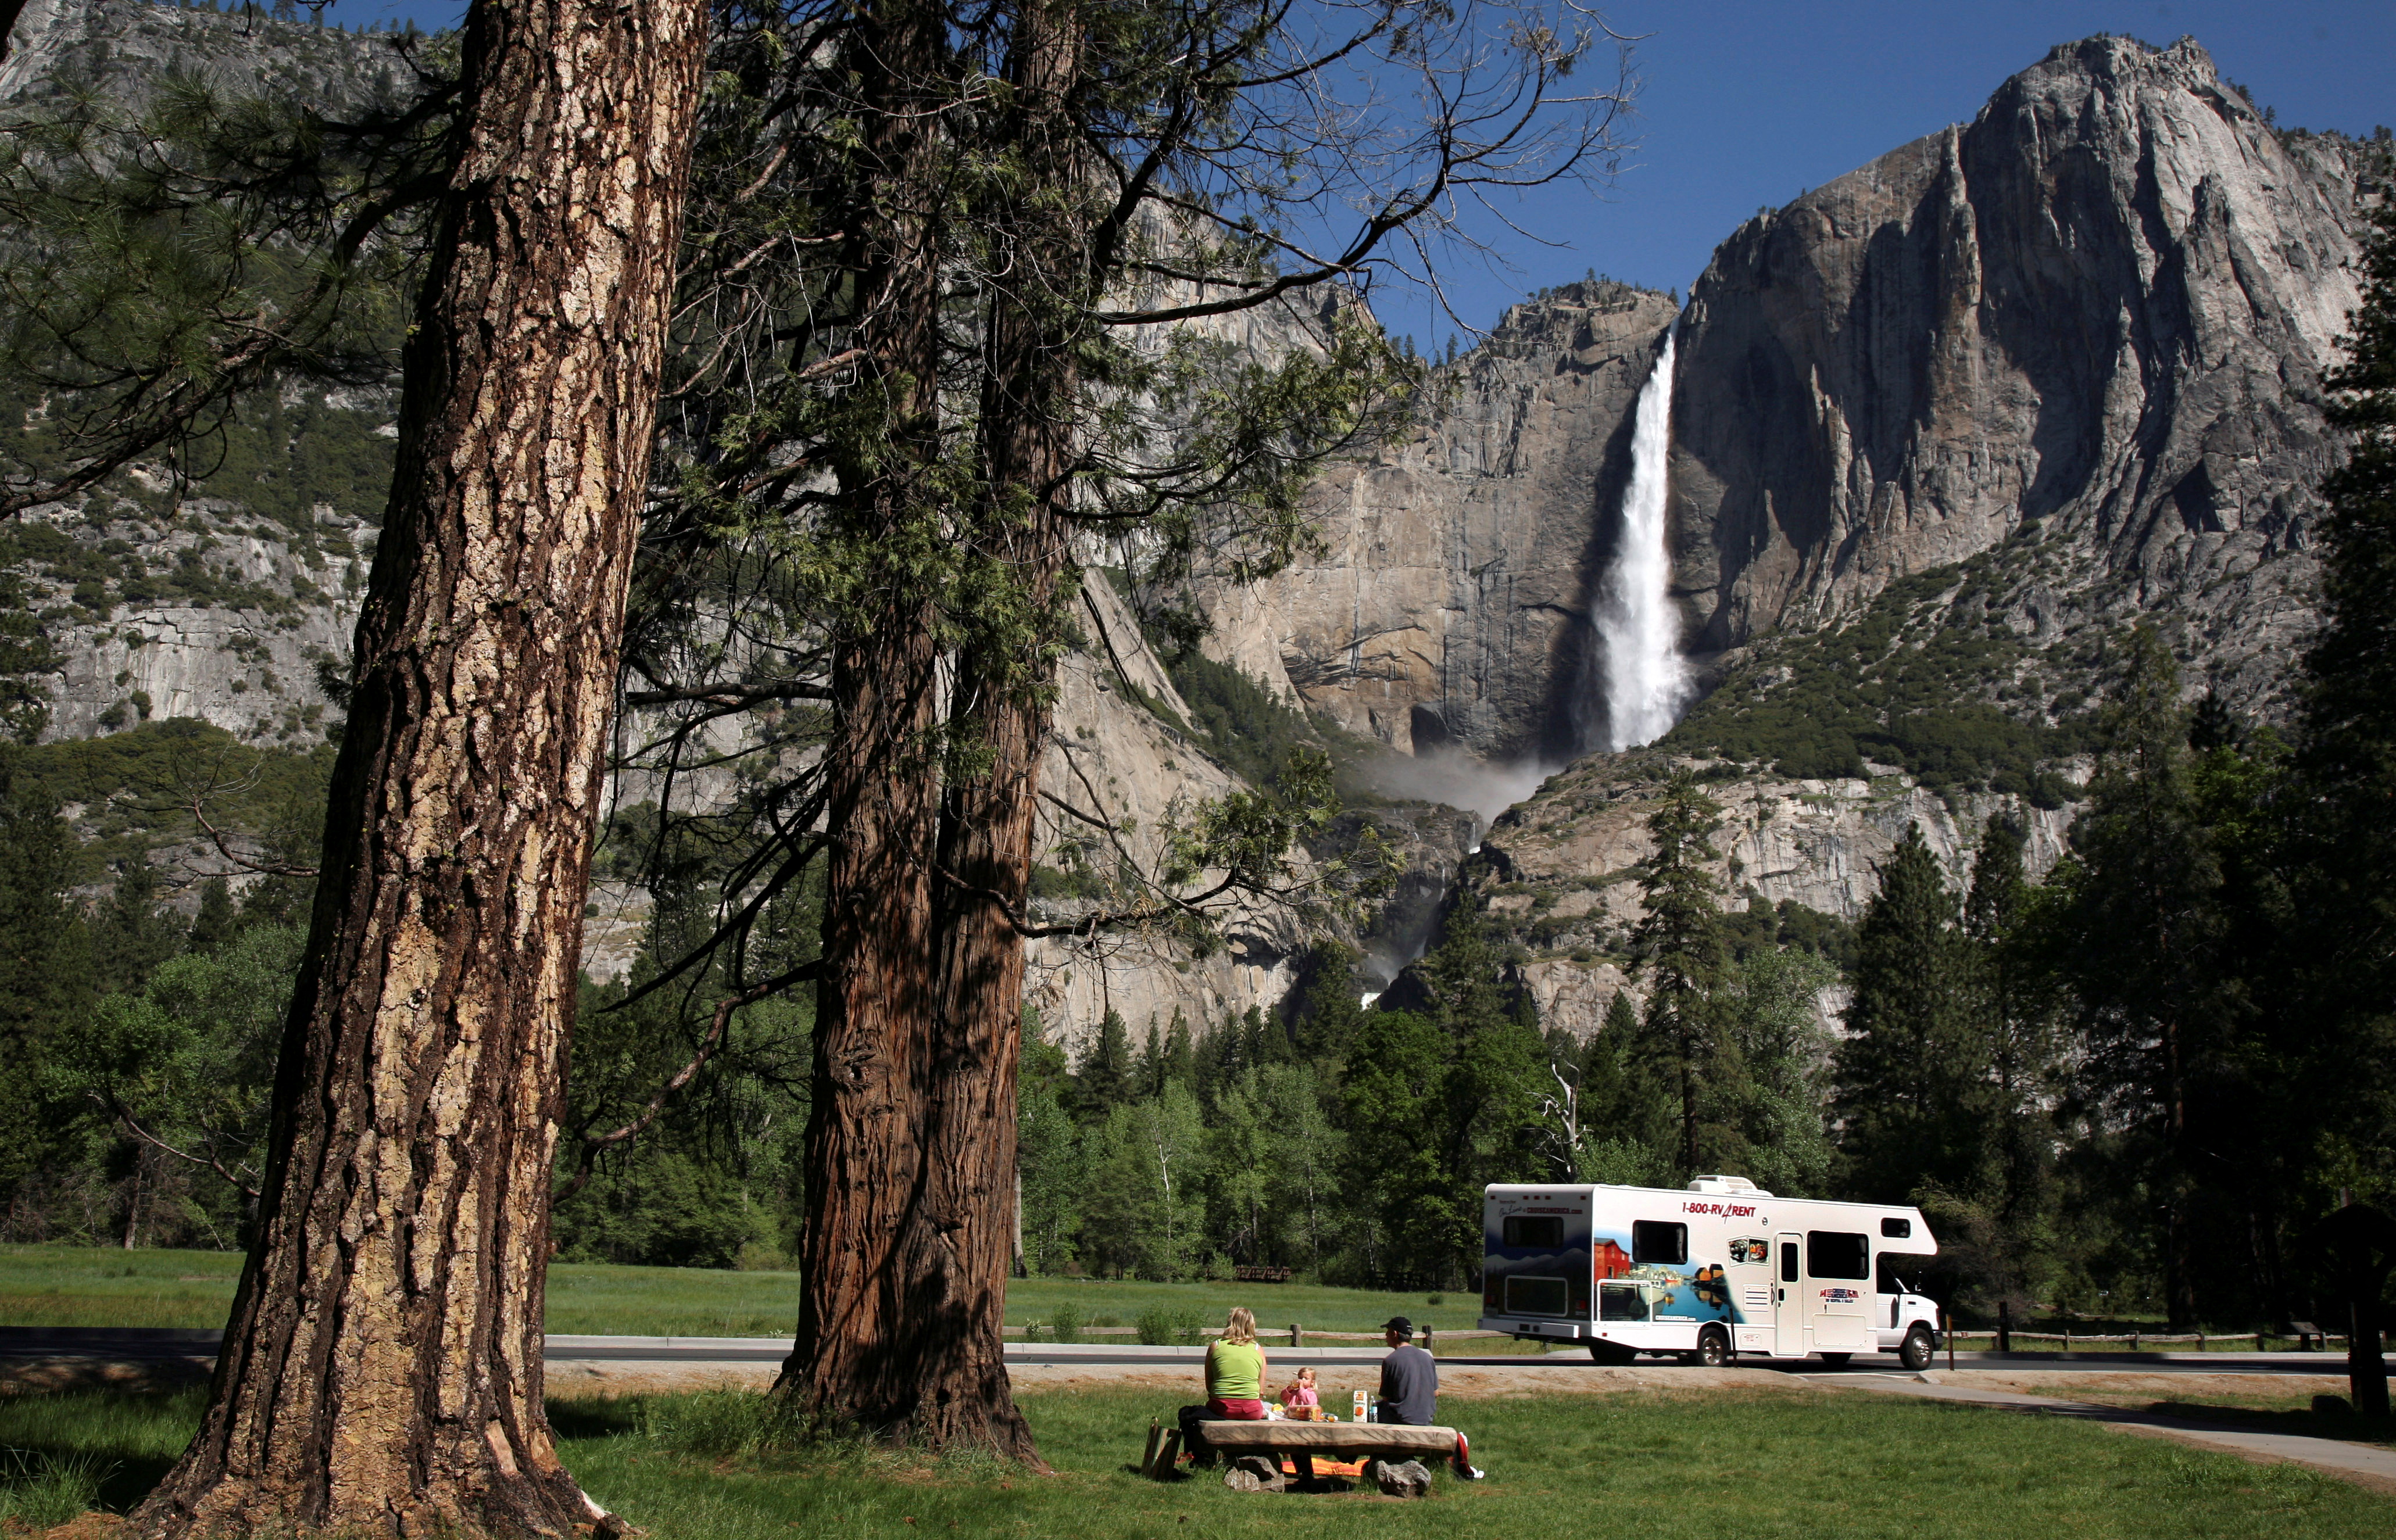 Foto de archivo: Una familia hace un picnic en el Parque Nacional de Yosemite, California (REUTERS/Robert Galbraith)